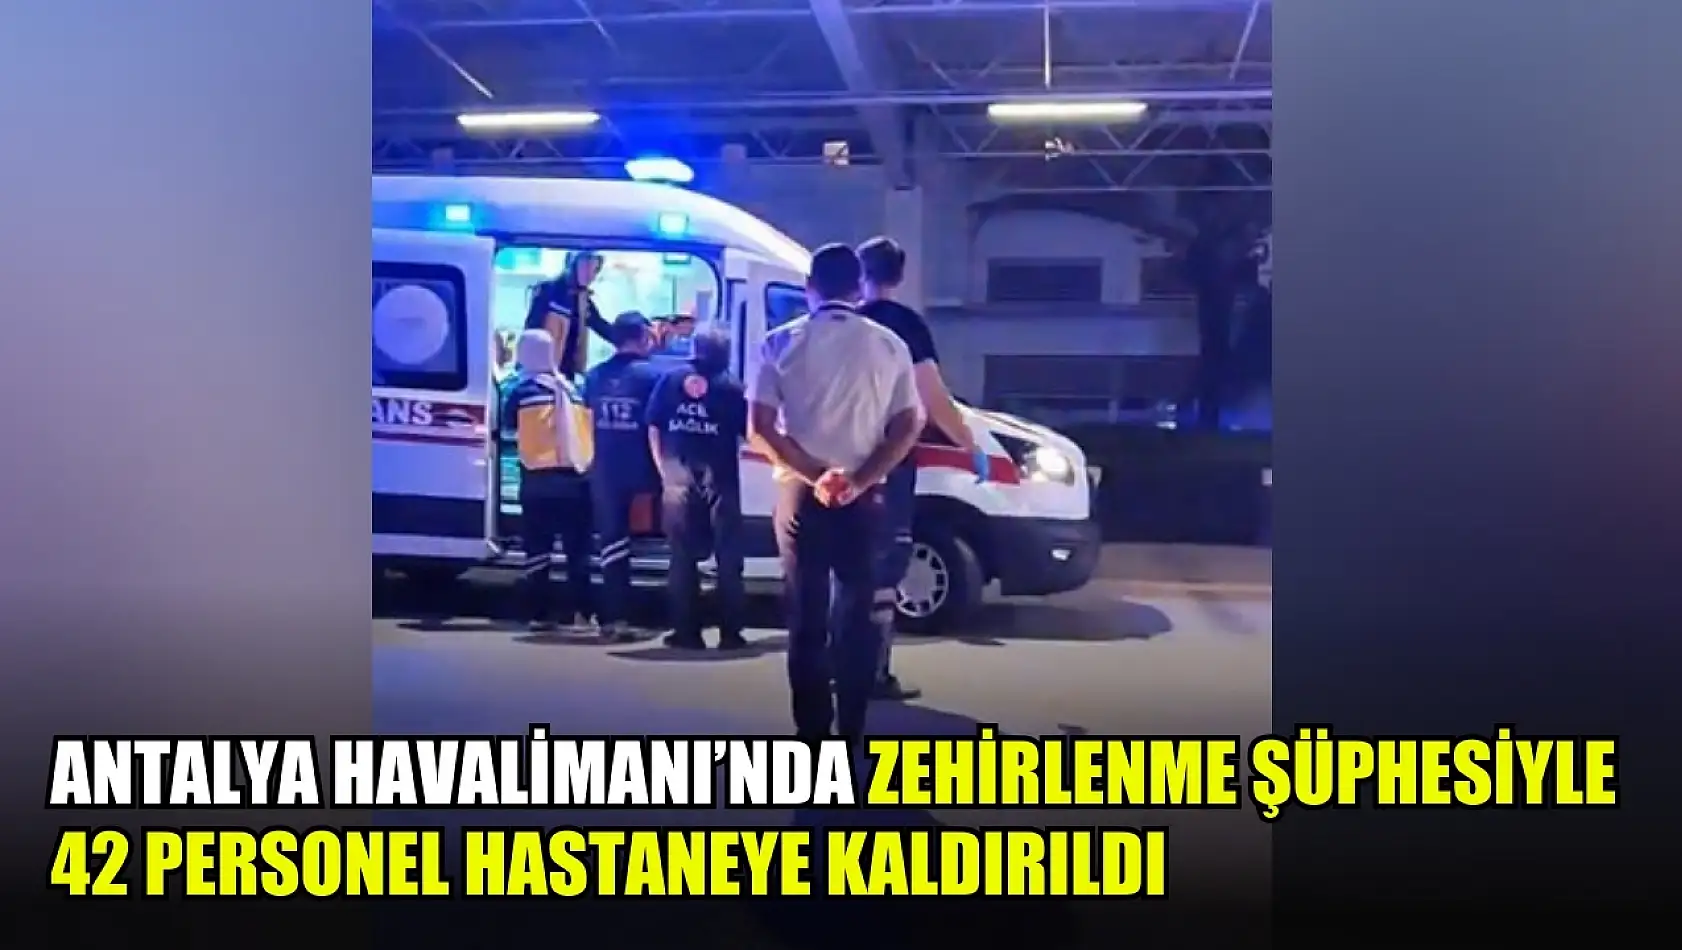 Antalya Havalimanı'nda zehirlenme şüphesiyle 42 personel hastaneye kaldırıldı